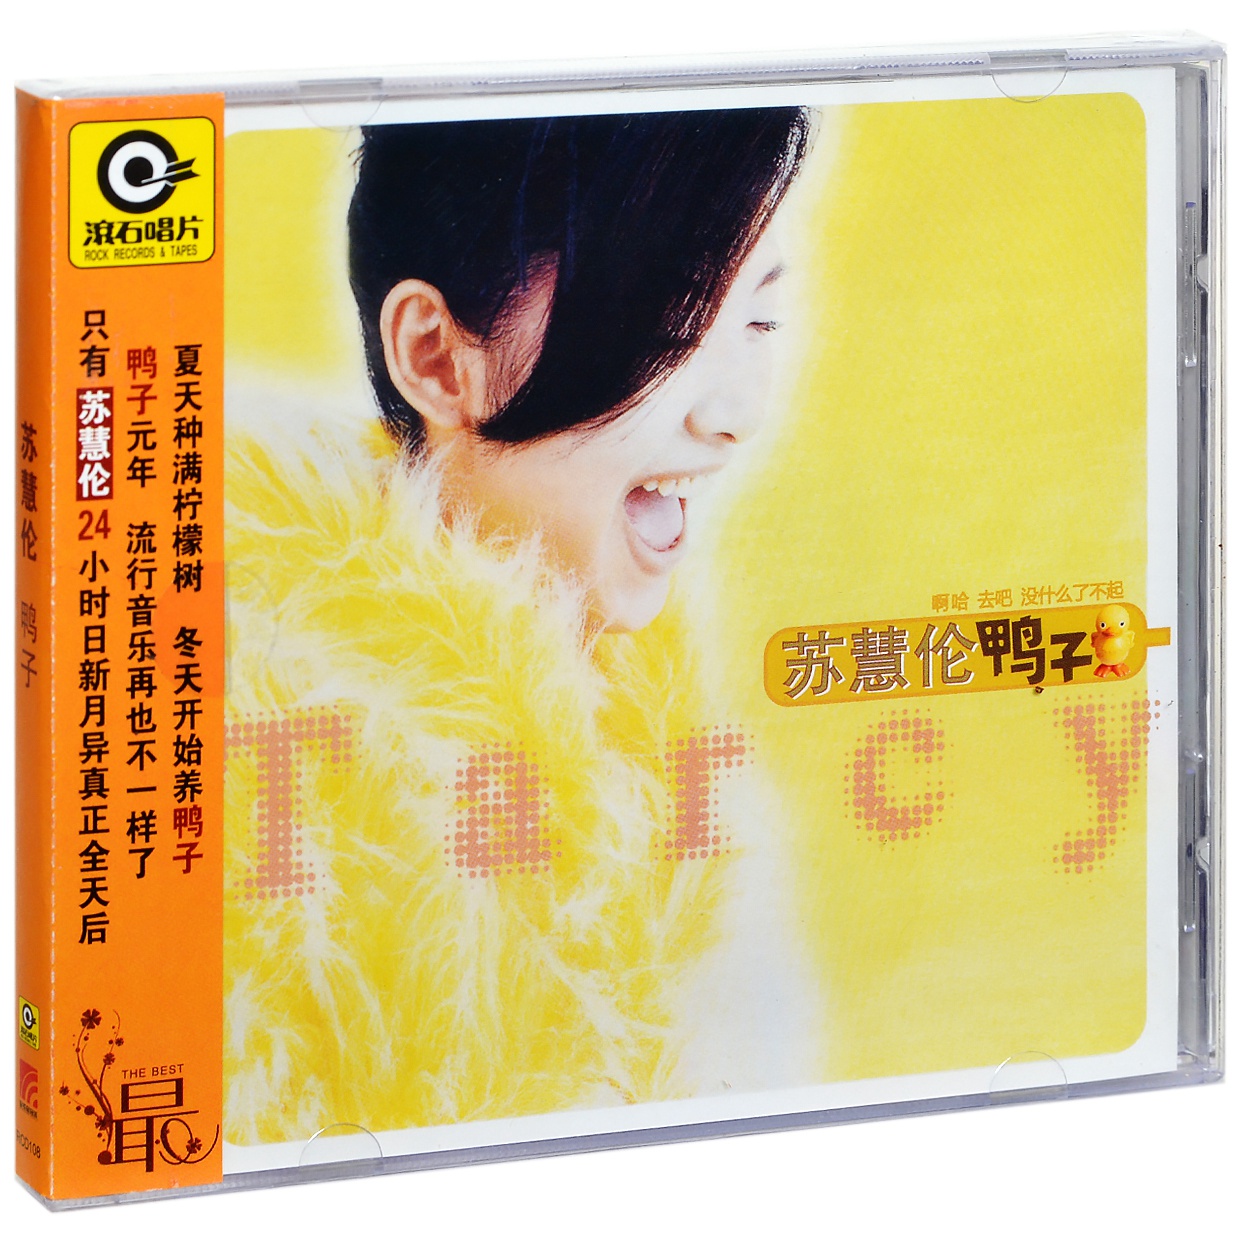 正版唱片 苏慧伦 鸭子 1996专辑CD碟片+歌词本 滚石系列